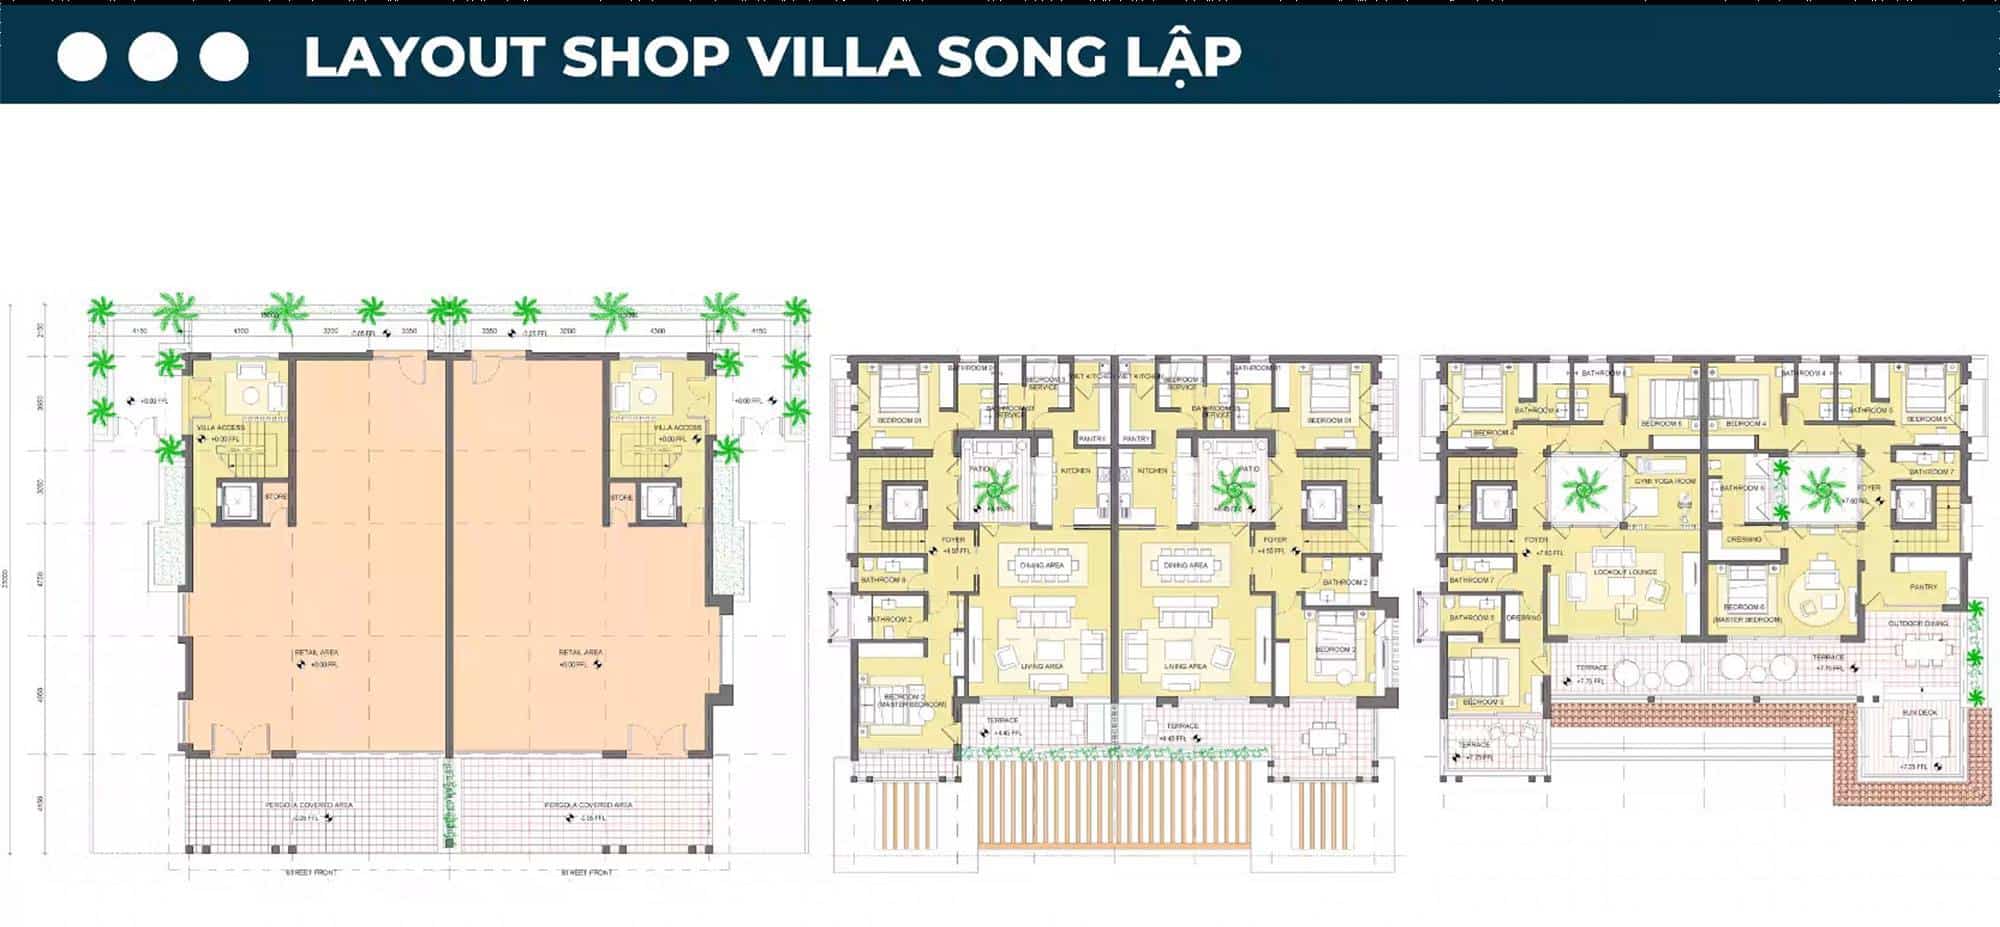 Layout thiết kế Shop Villa song lập.